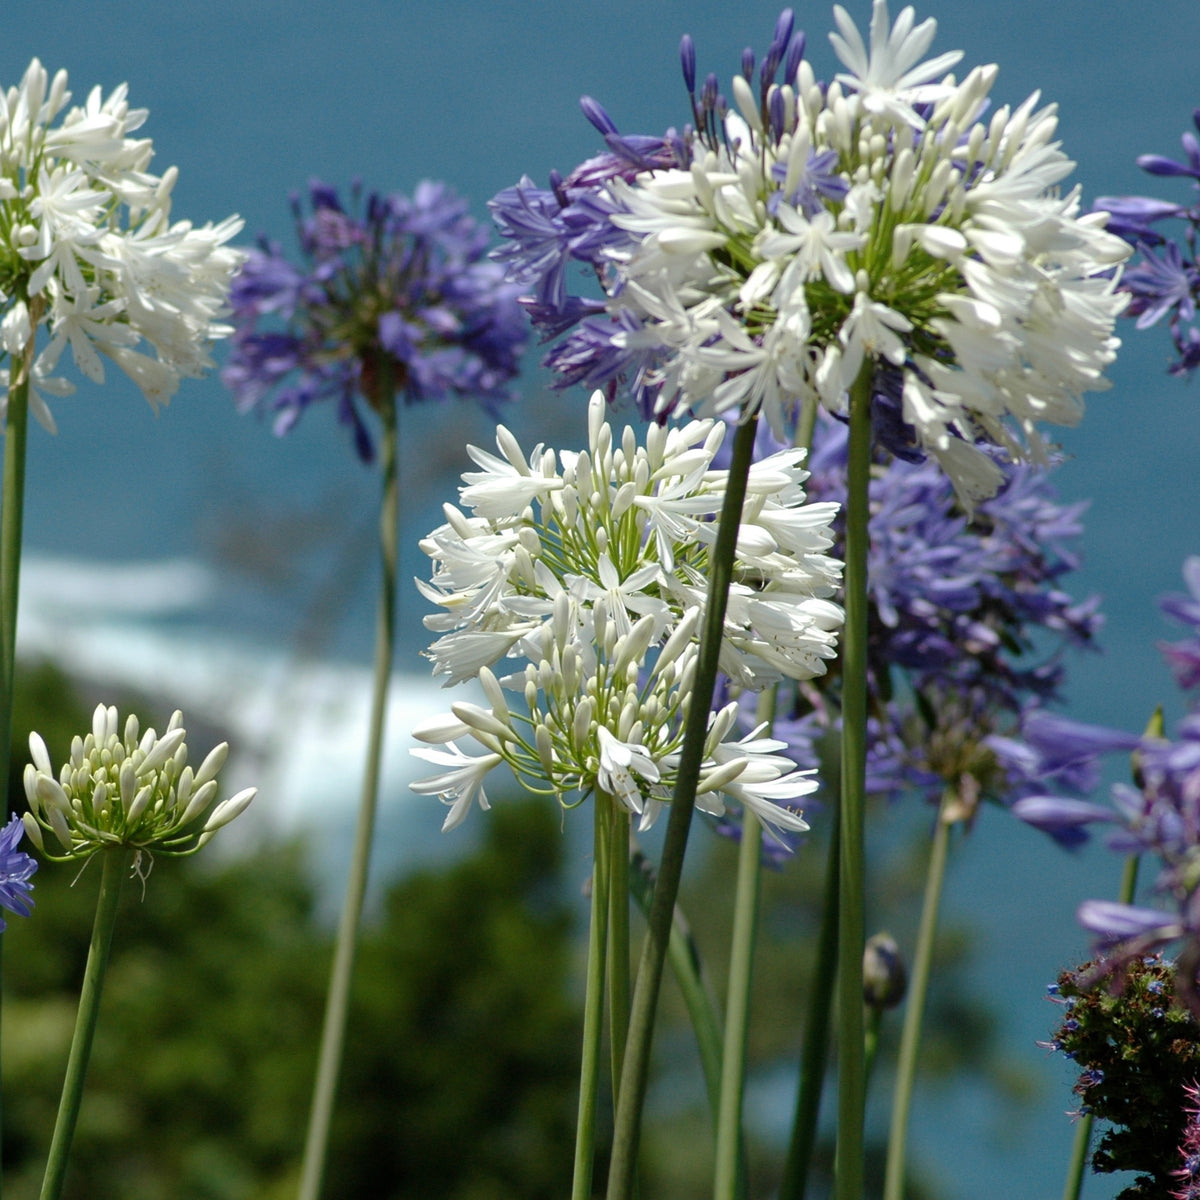 3 Agapanthes violettes et blanche en mélange - Agapanthus - Plantes vivaces